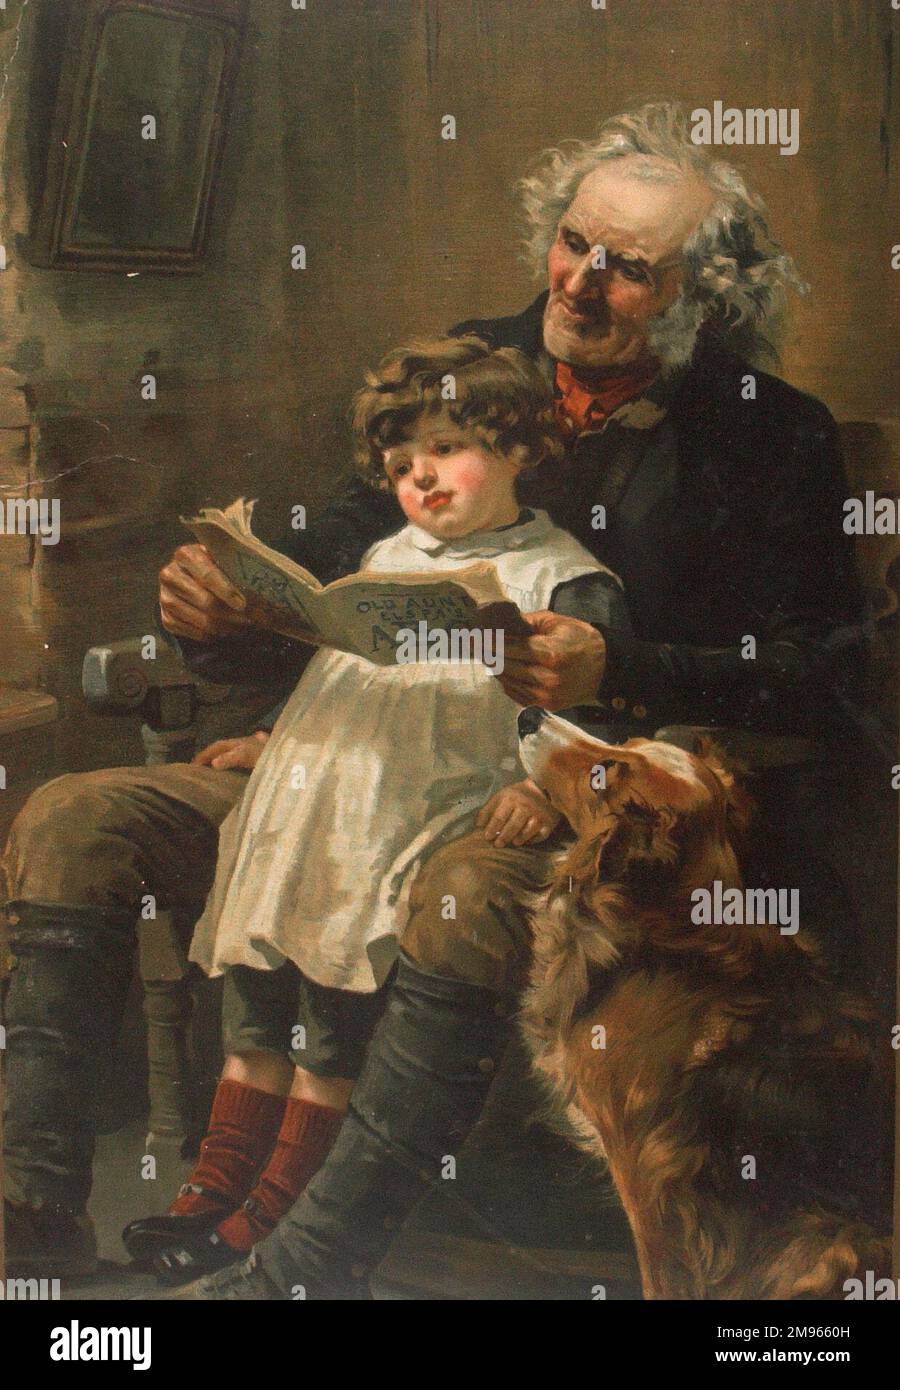 Ein viktorianisches Bild, das einen alten Großvater zeigt, der mit einem kleinen Kind liest. Stockfoto